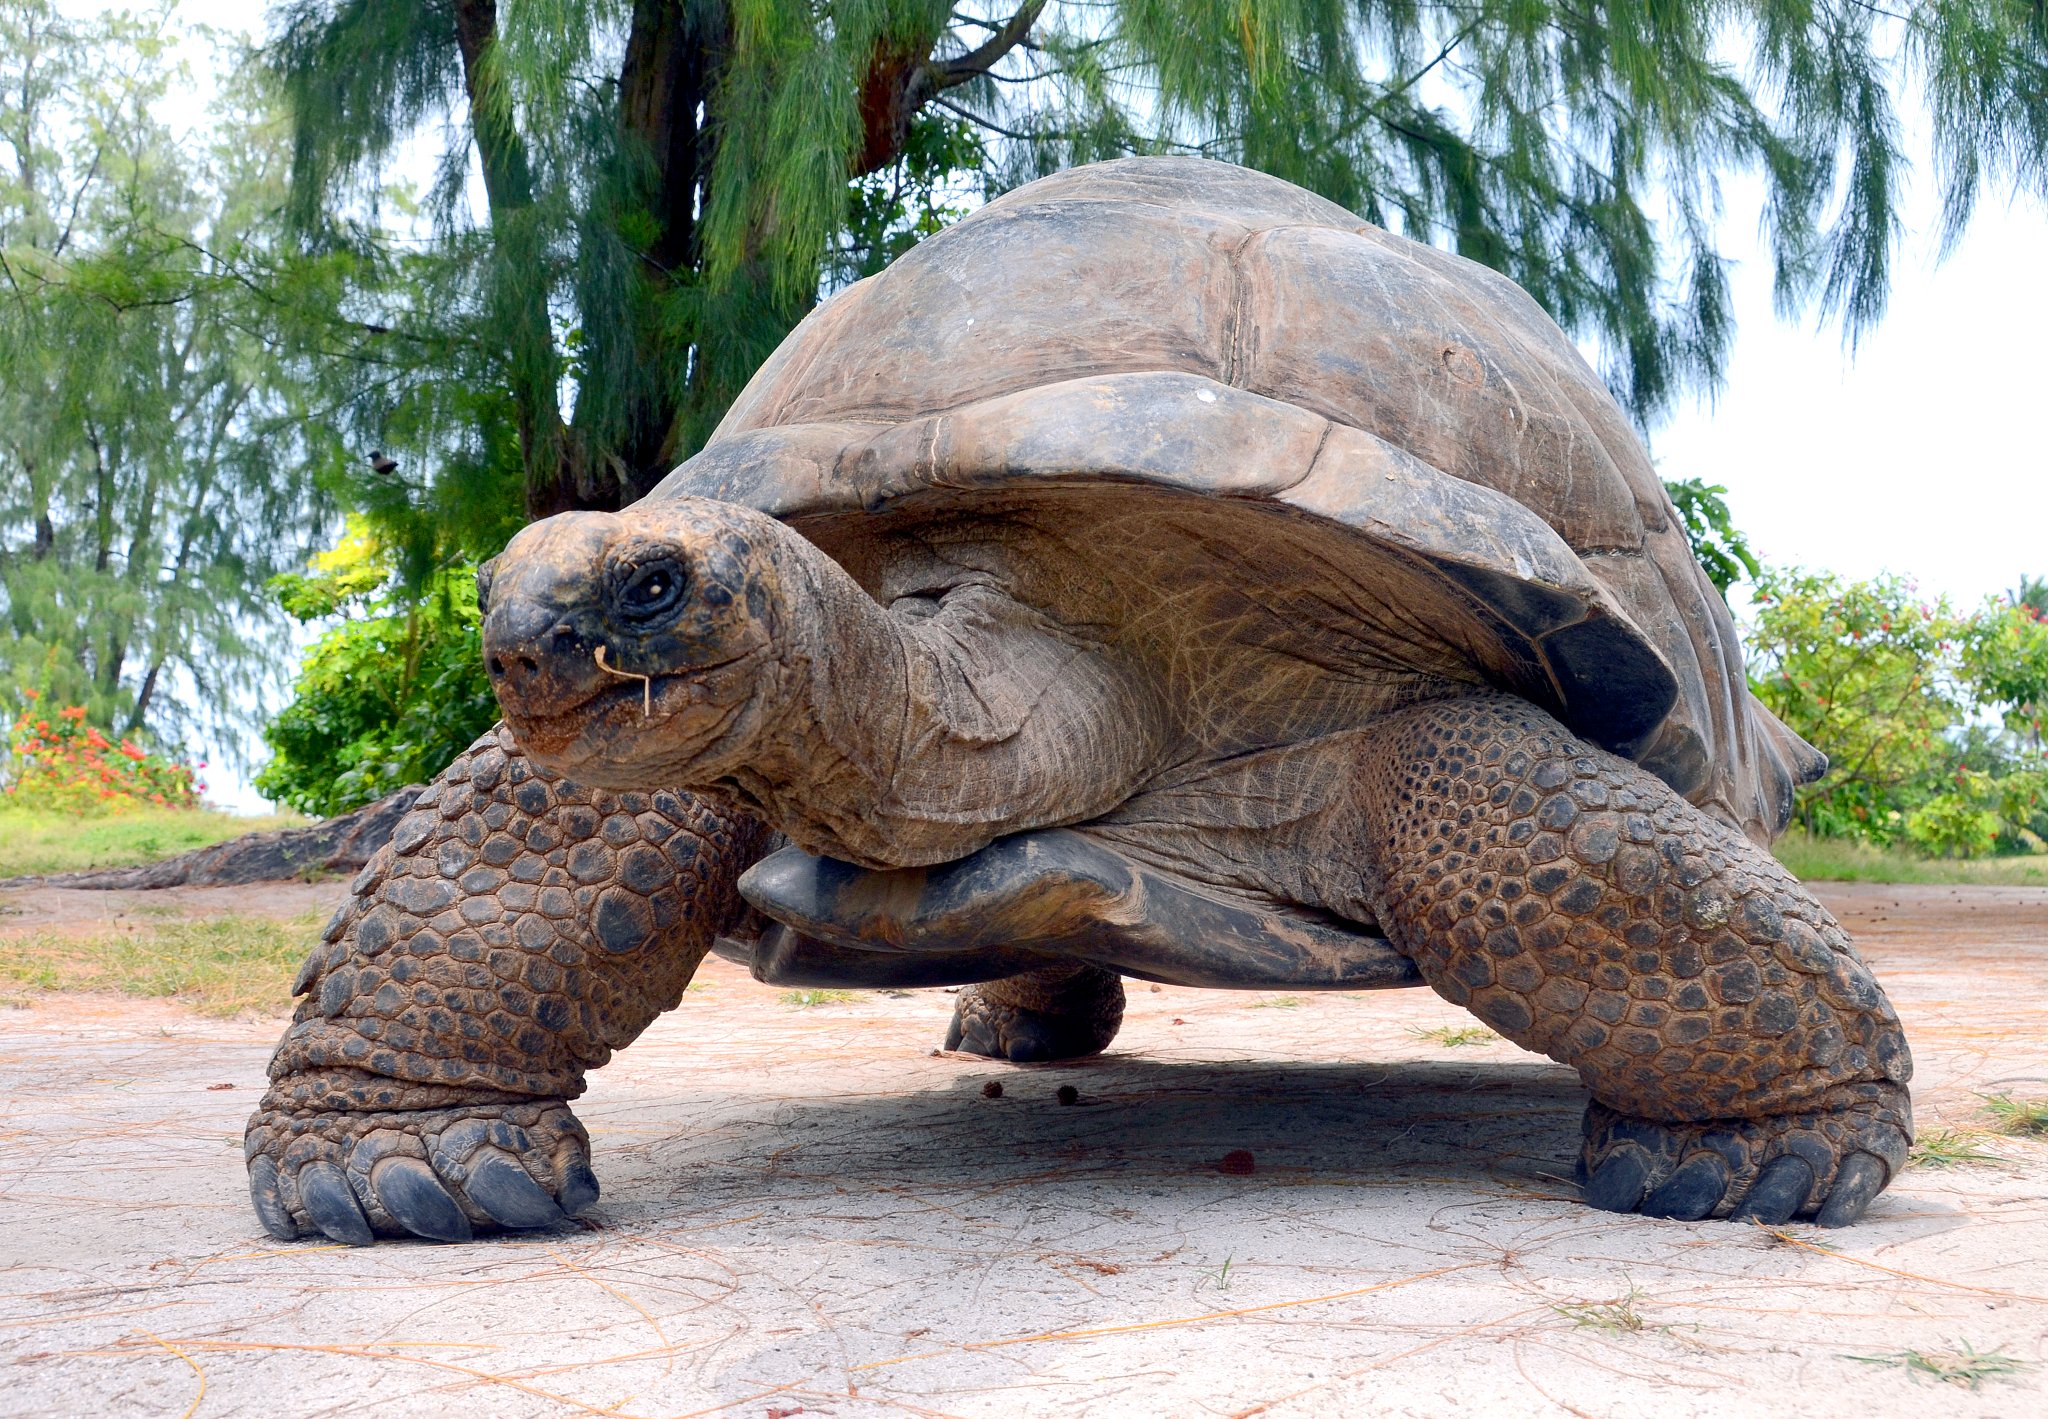 Слоновая черепаха среда обитания. Исполинская сейшельская черепаха. Галапагосская черепаха. Галапагосская слоновая черепаха. Гигантская черепаха Альдабра.